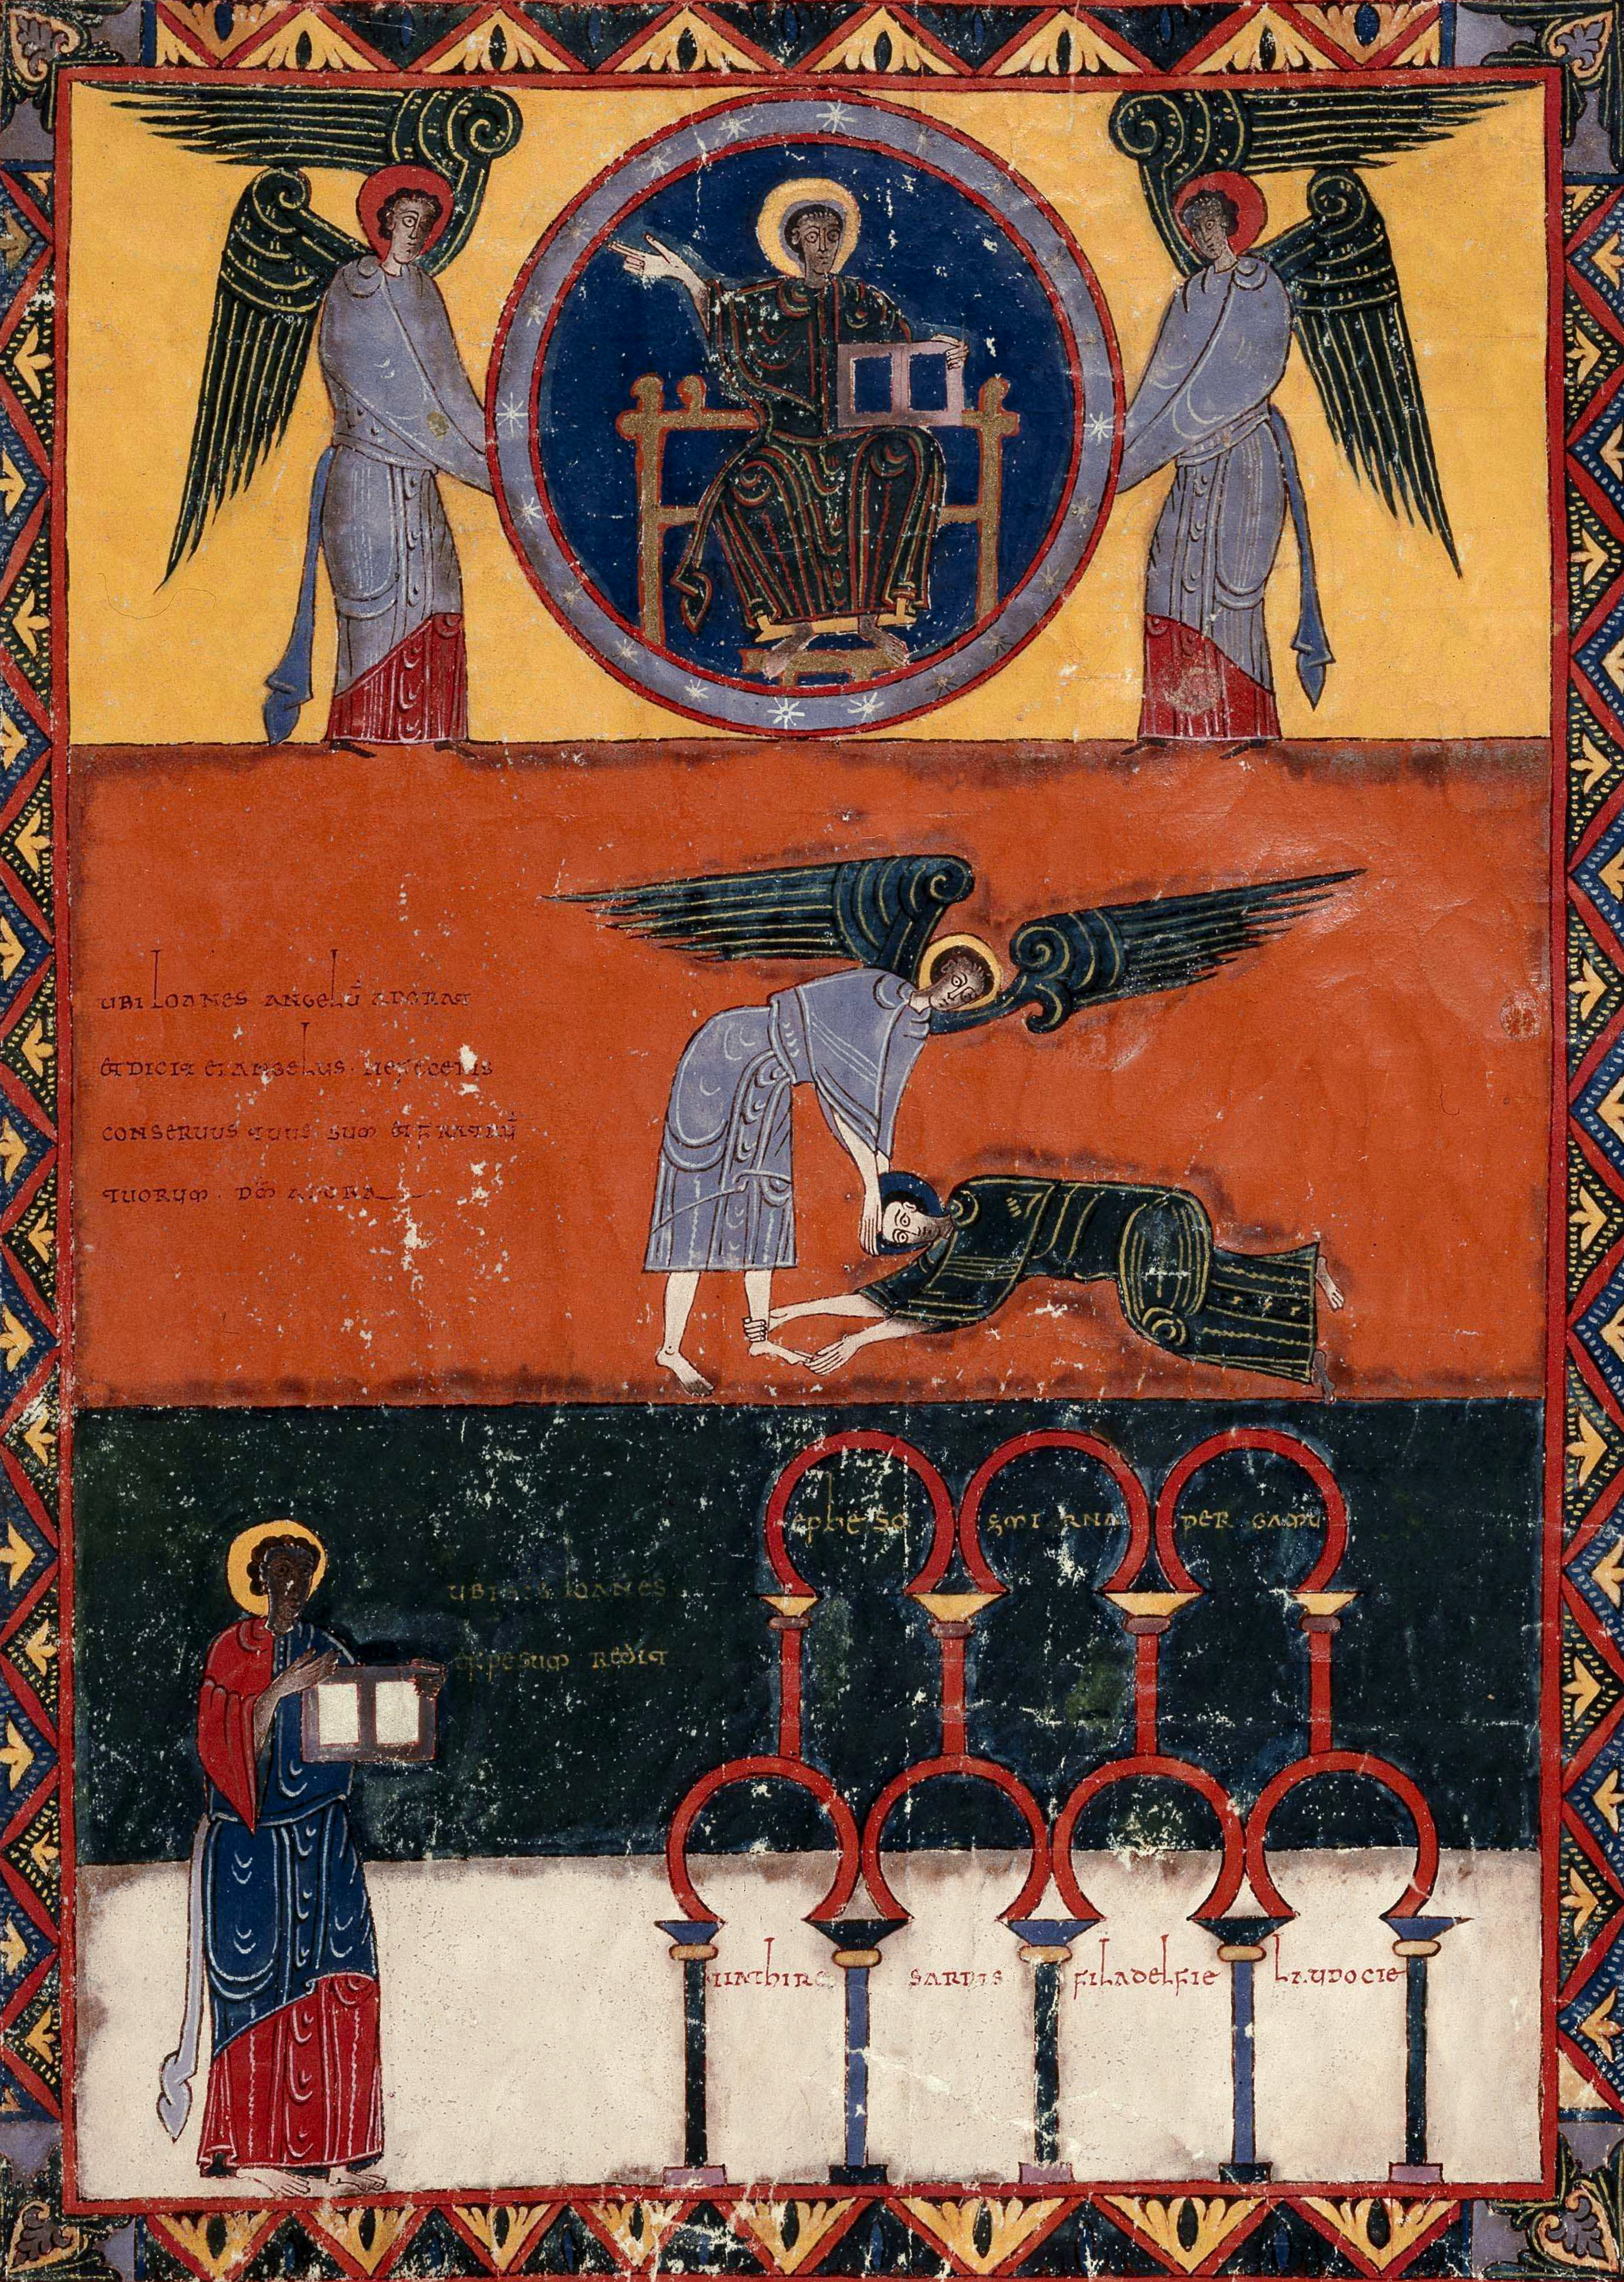 Beatus de Facundus, p. 524 – Jean se prosterne à nouveau devant un ange qui l’invite à se relever et à adorer Dieu seul (Ap 22, 8-9) ; le reste de la miniature rappelle celle de la page 91.